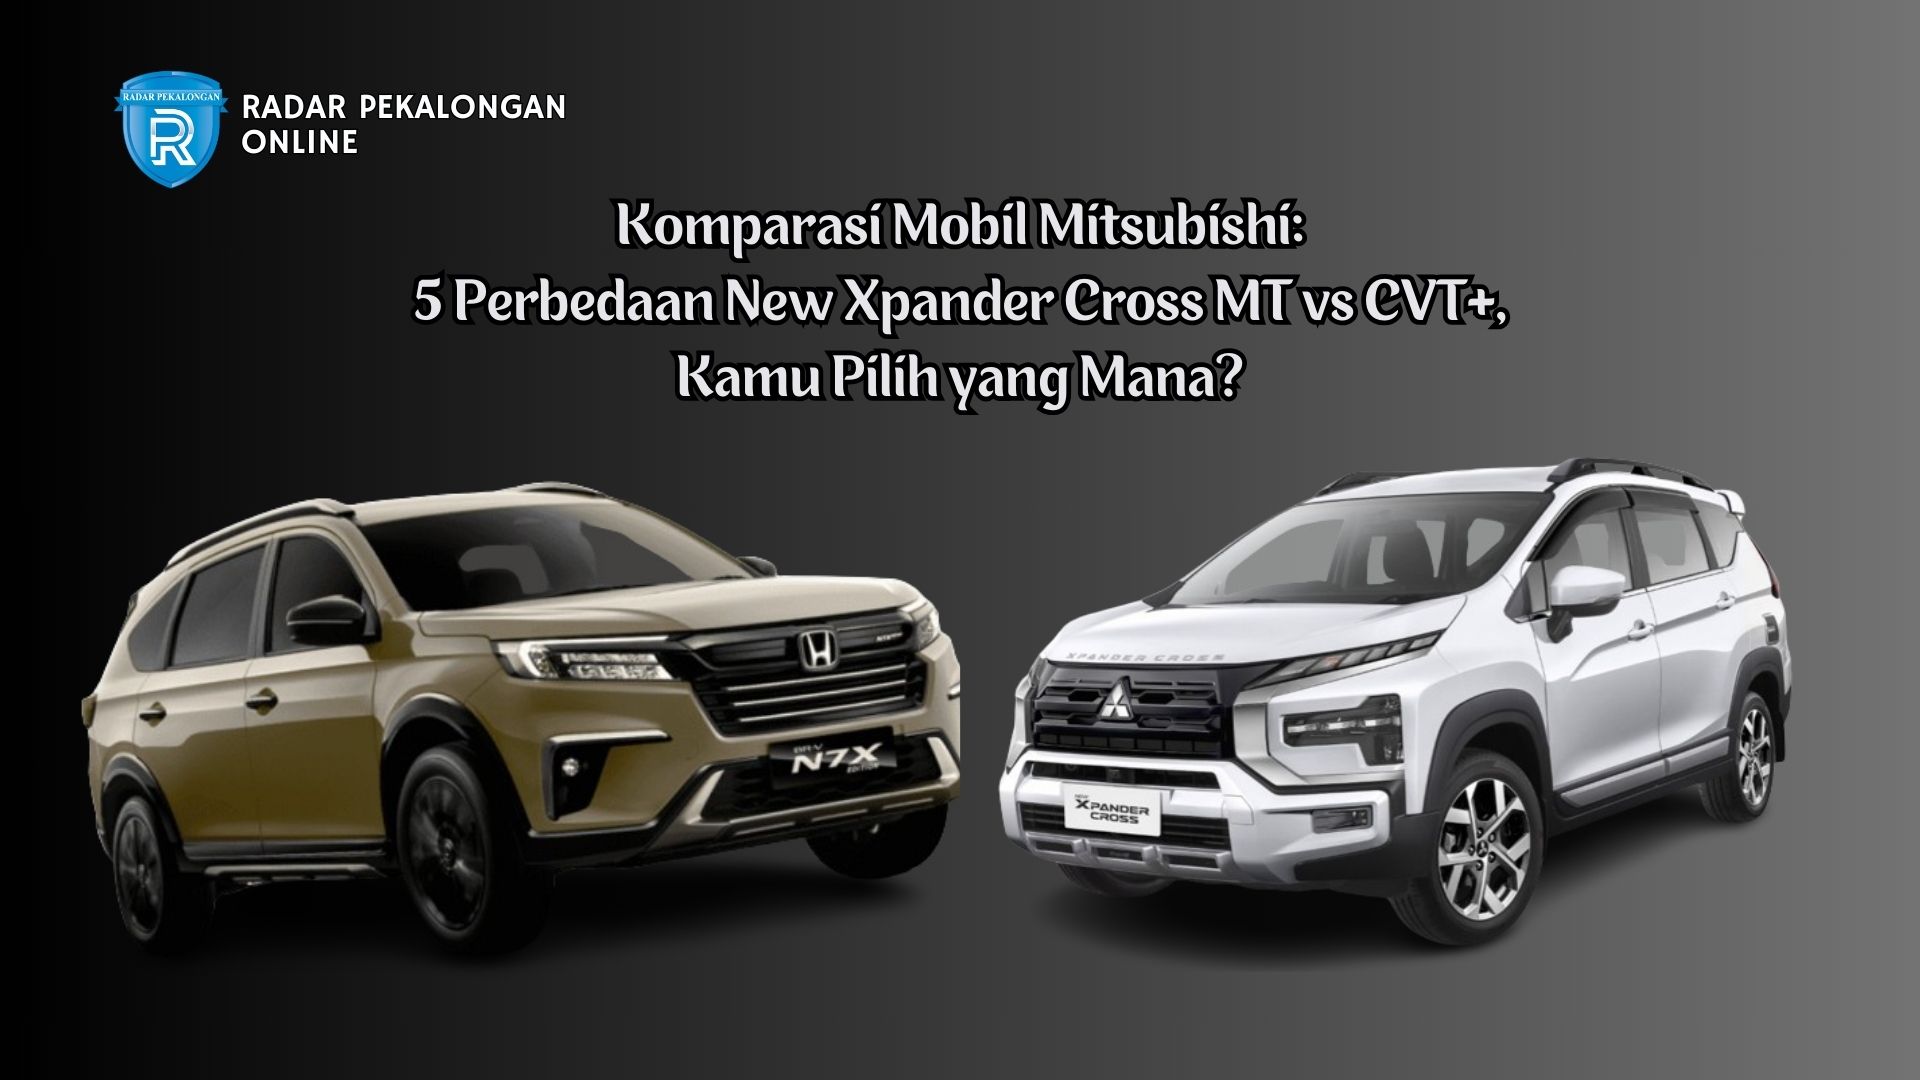 Komparasi Mobil Mitsubishi: 5 Perbedaan New Xpander Cross MT vs CVT+, Kamu Pilih yang Mana?